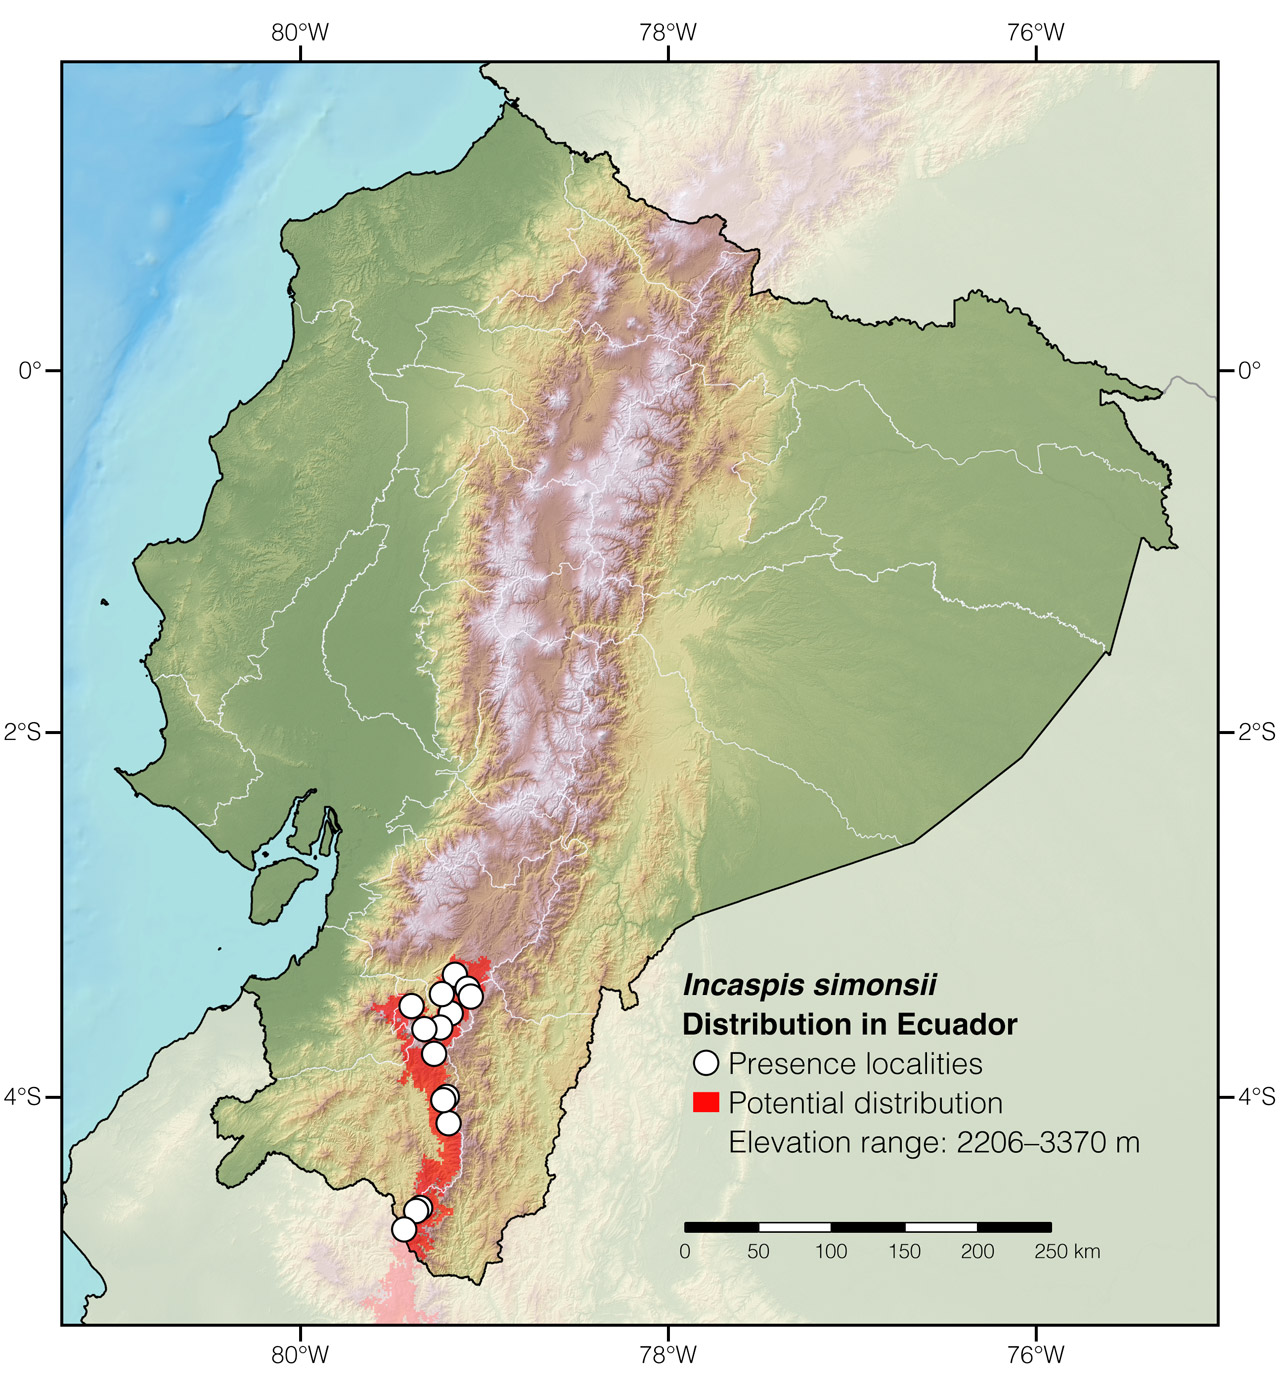 Distribution of Incaspis simonsii in Ecuador